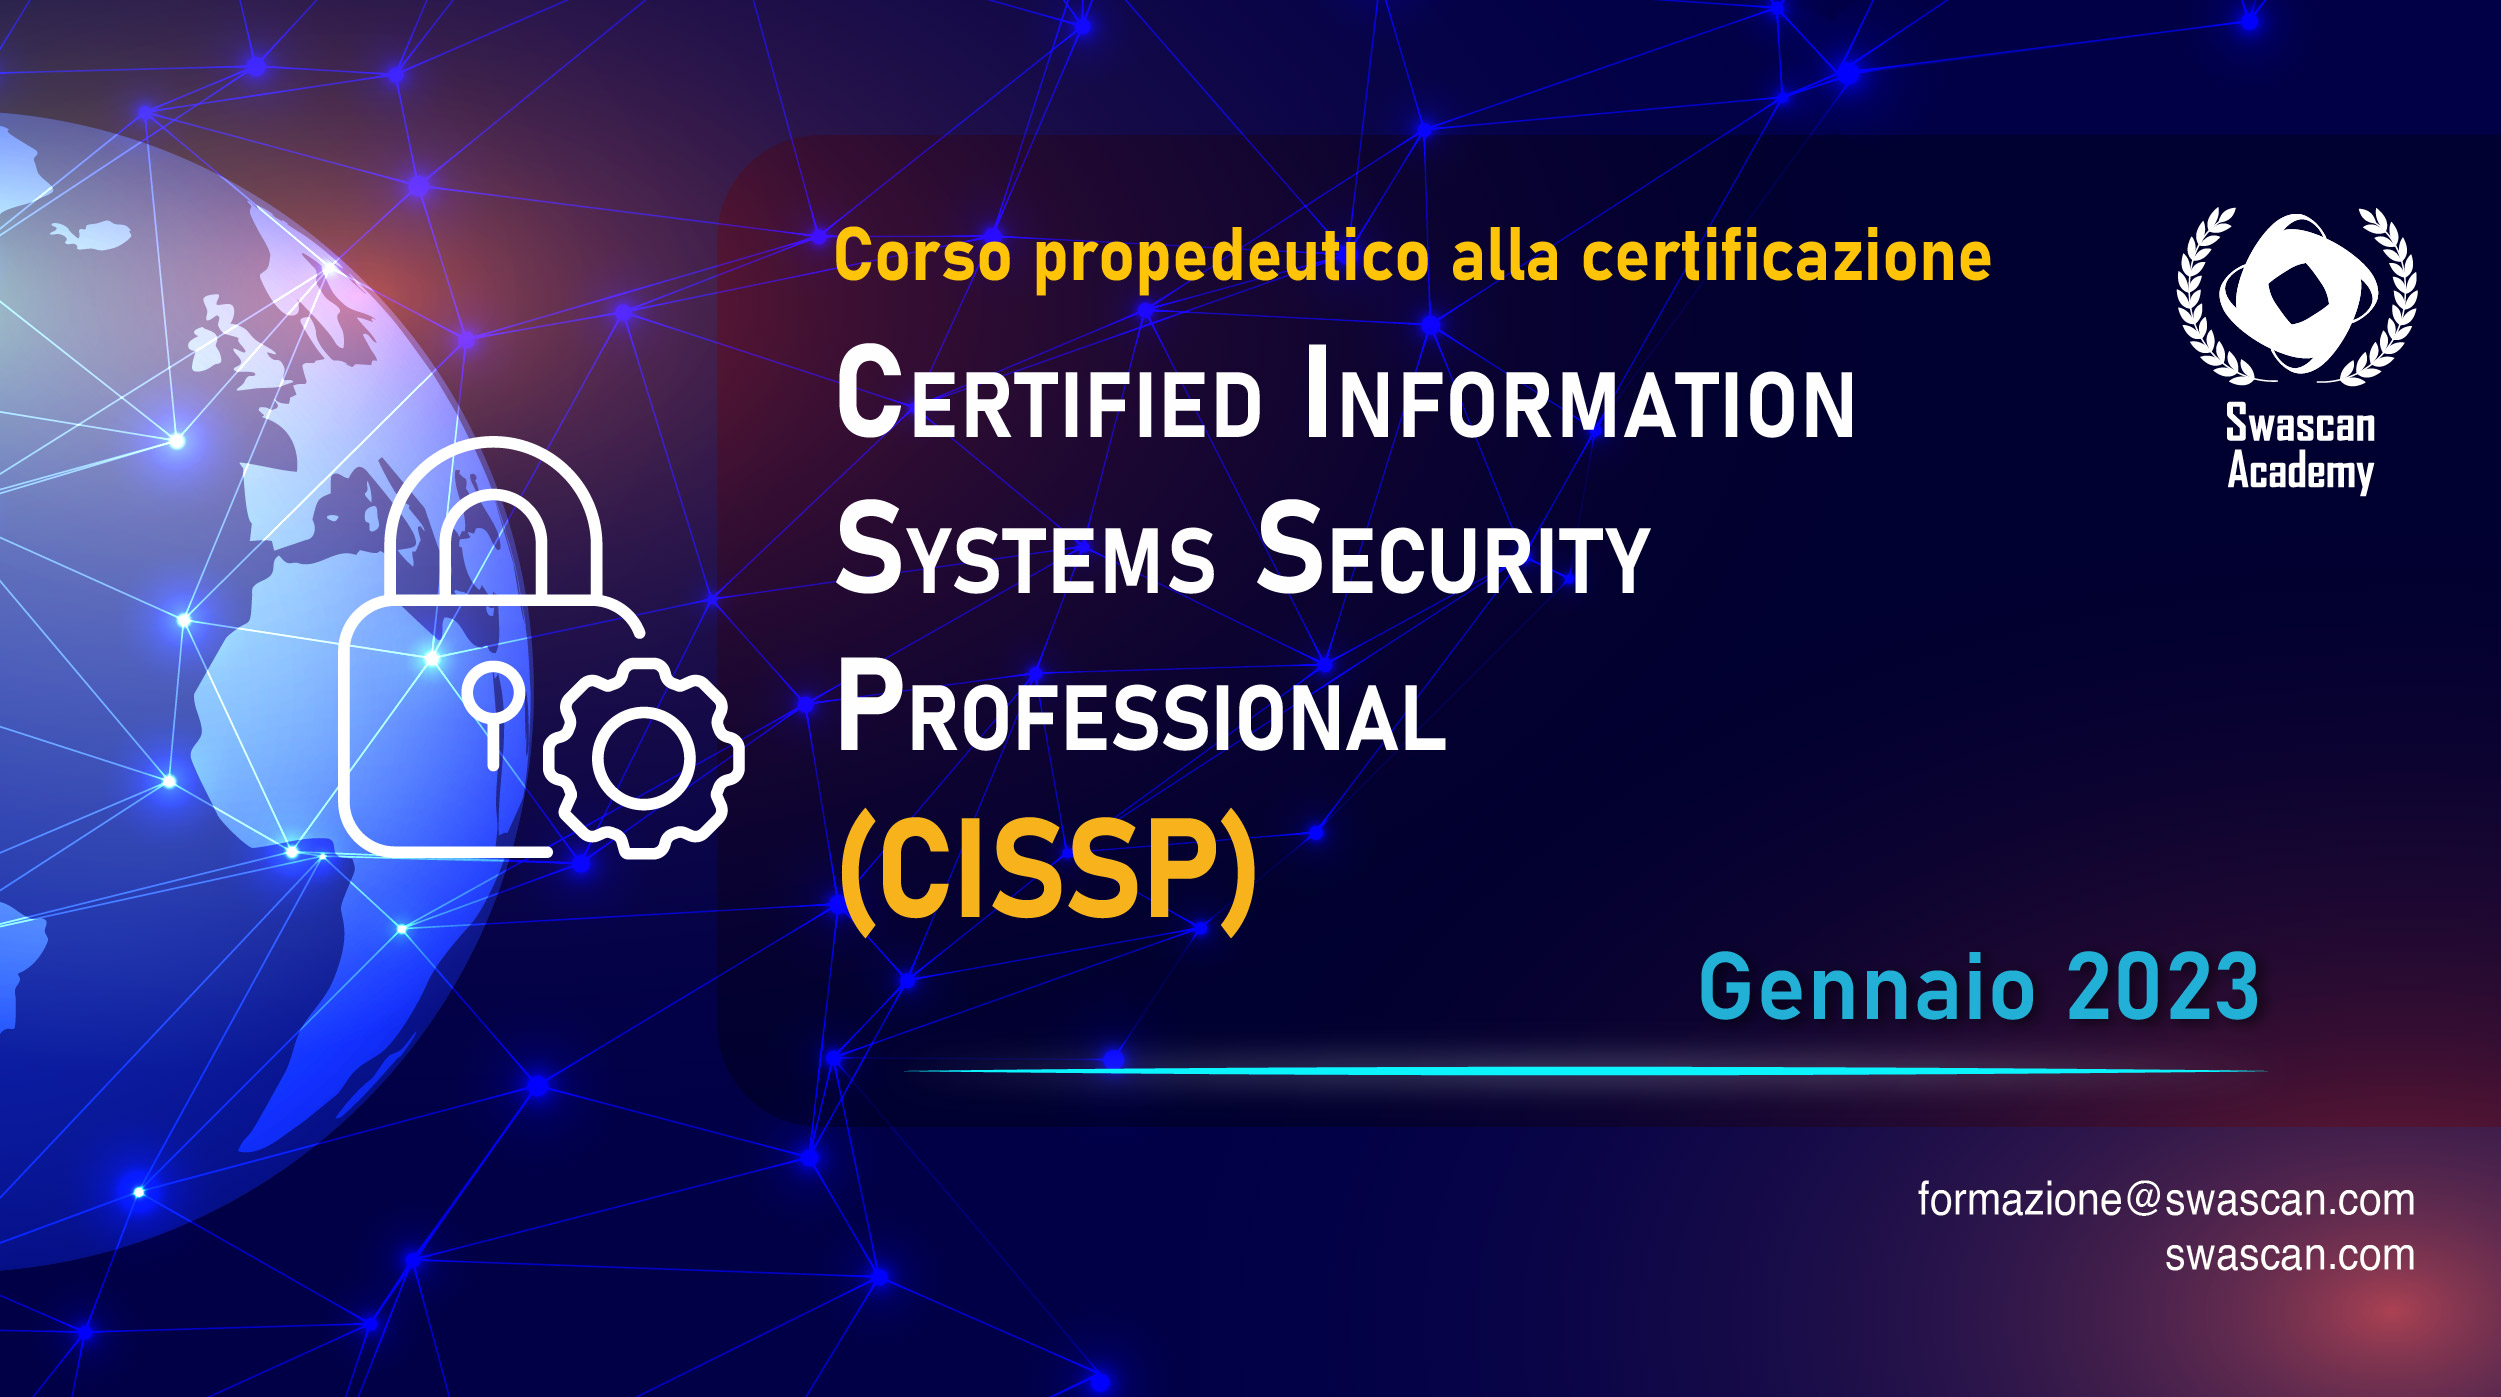 Swascan Academy lancia la Terza Edizione del corso propedeutico alla certificazione CISSP!